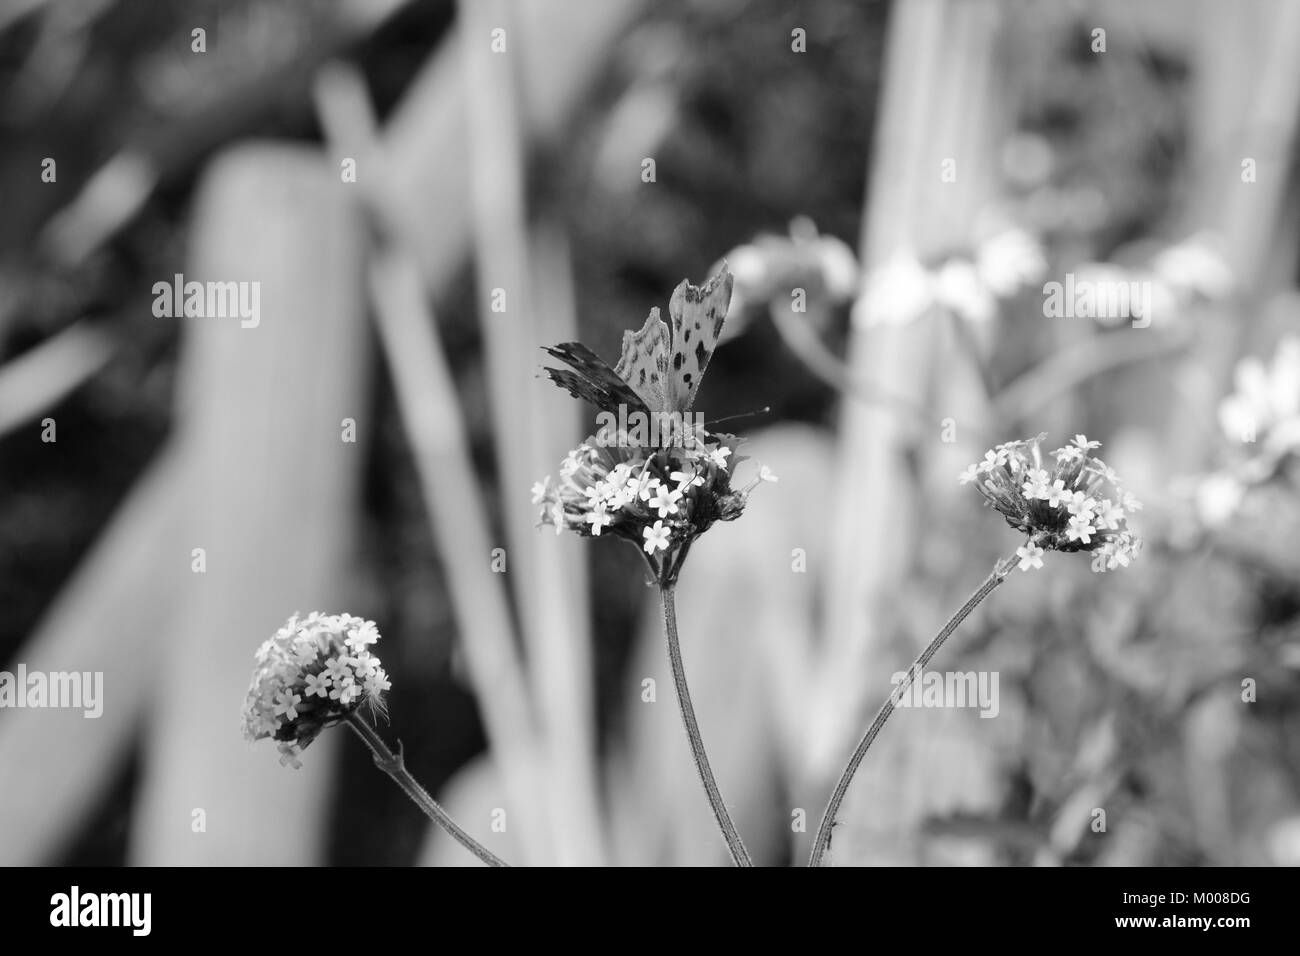 Kopf - Blick auf Komma Schmetterling trinken Nektar aus eisenkraut Blumen, verschwommenen Hintergrund der Gänseblümchen und Holz darüber hinaus - Schwarzweiß-Verarbeitung Stockfoto